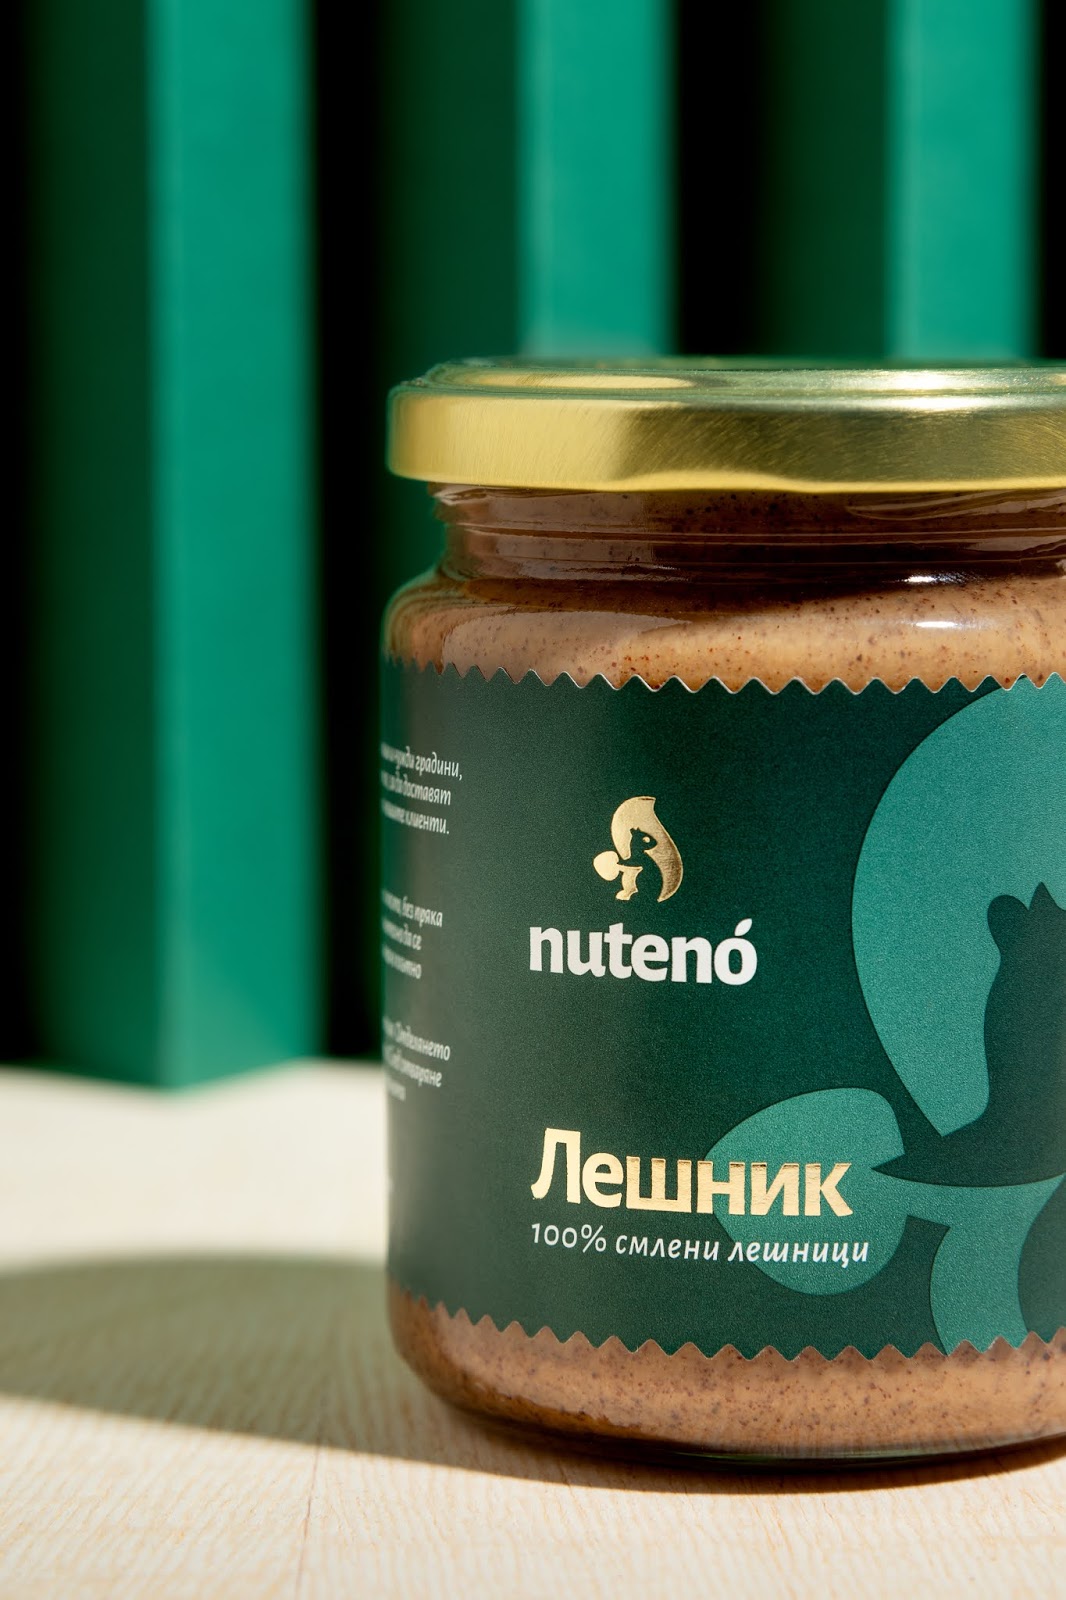 Nuteno坚果酱包装设计